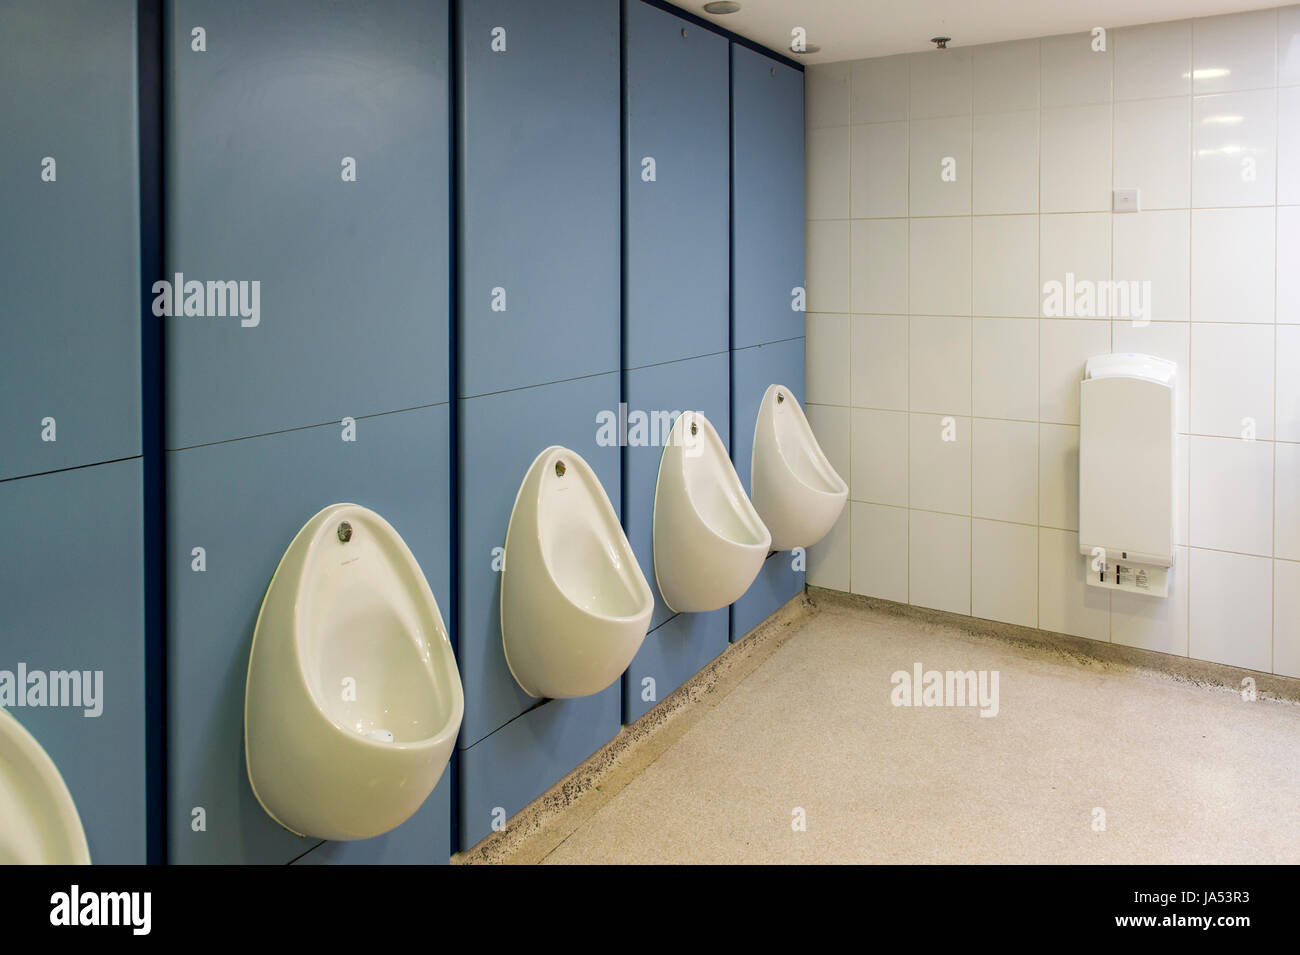 Interior de un aseo de caballeros en un centro comercial con urinarios y secador de manos. Foto de stock